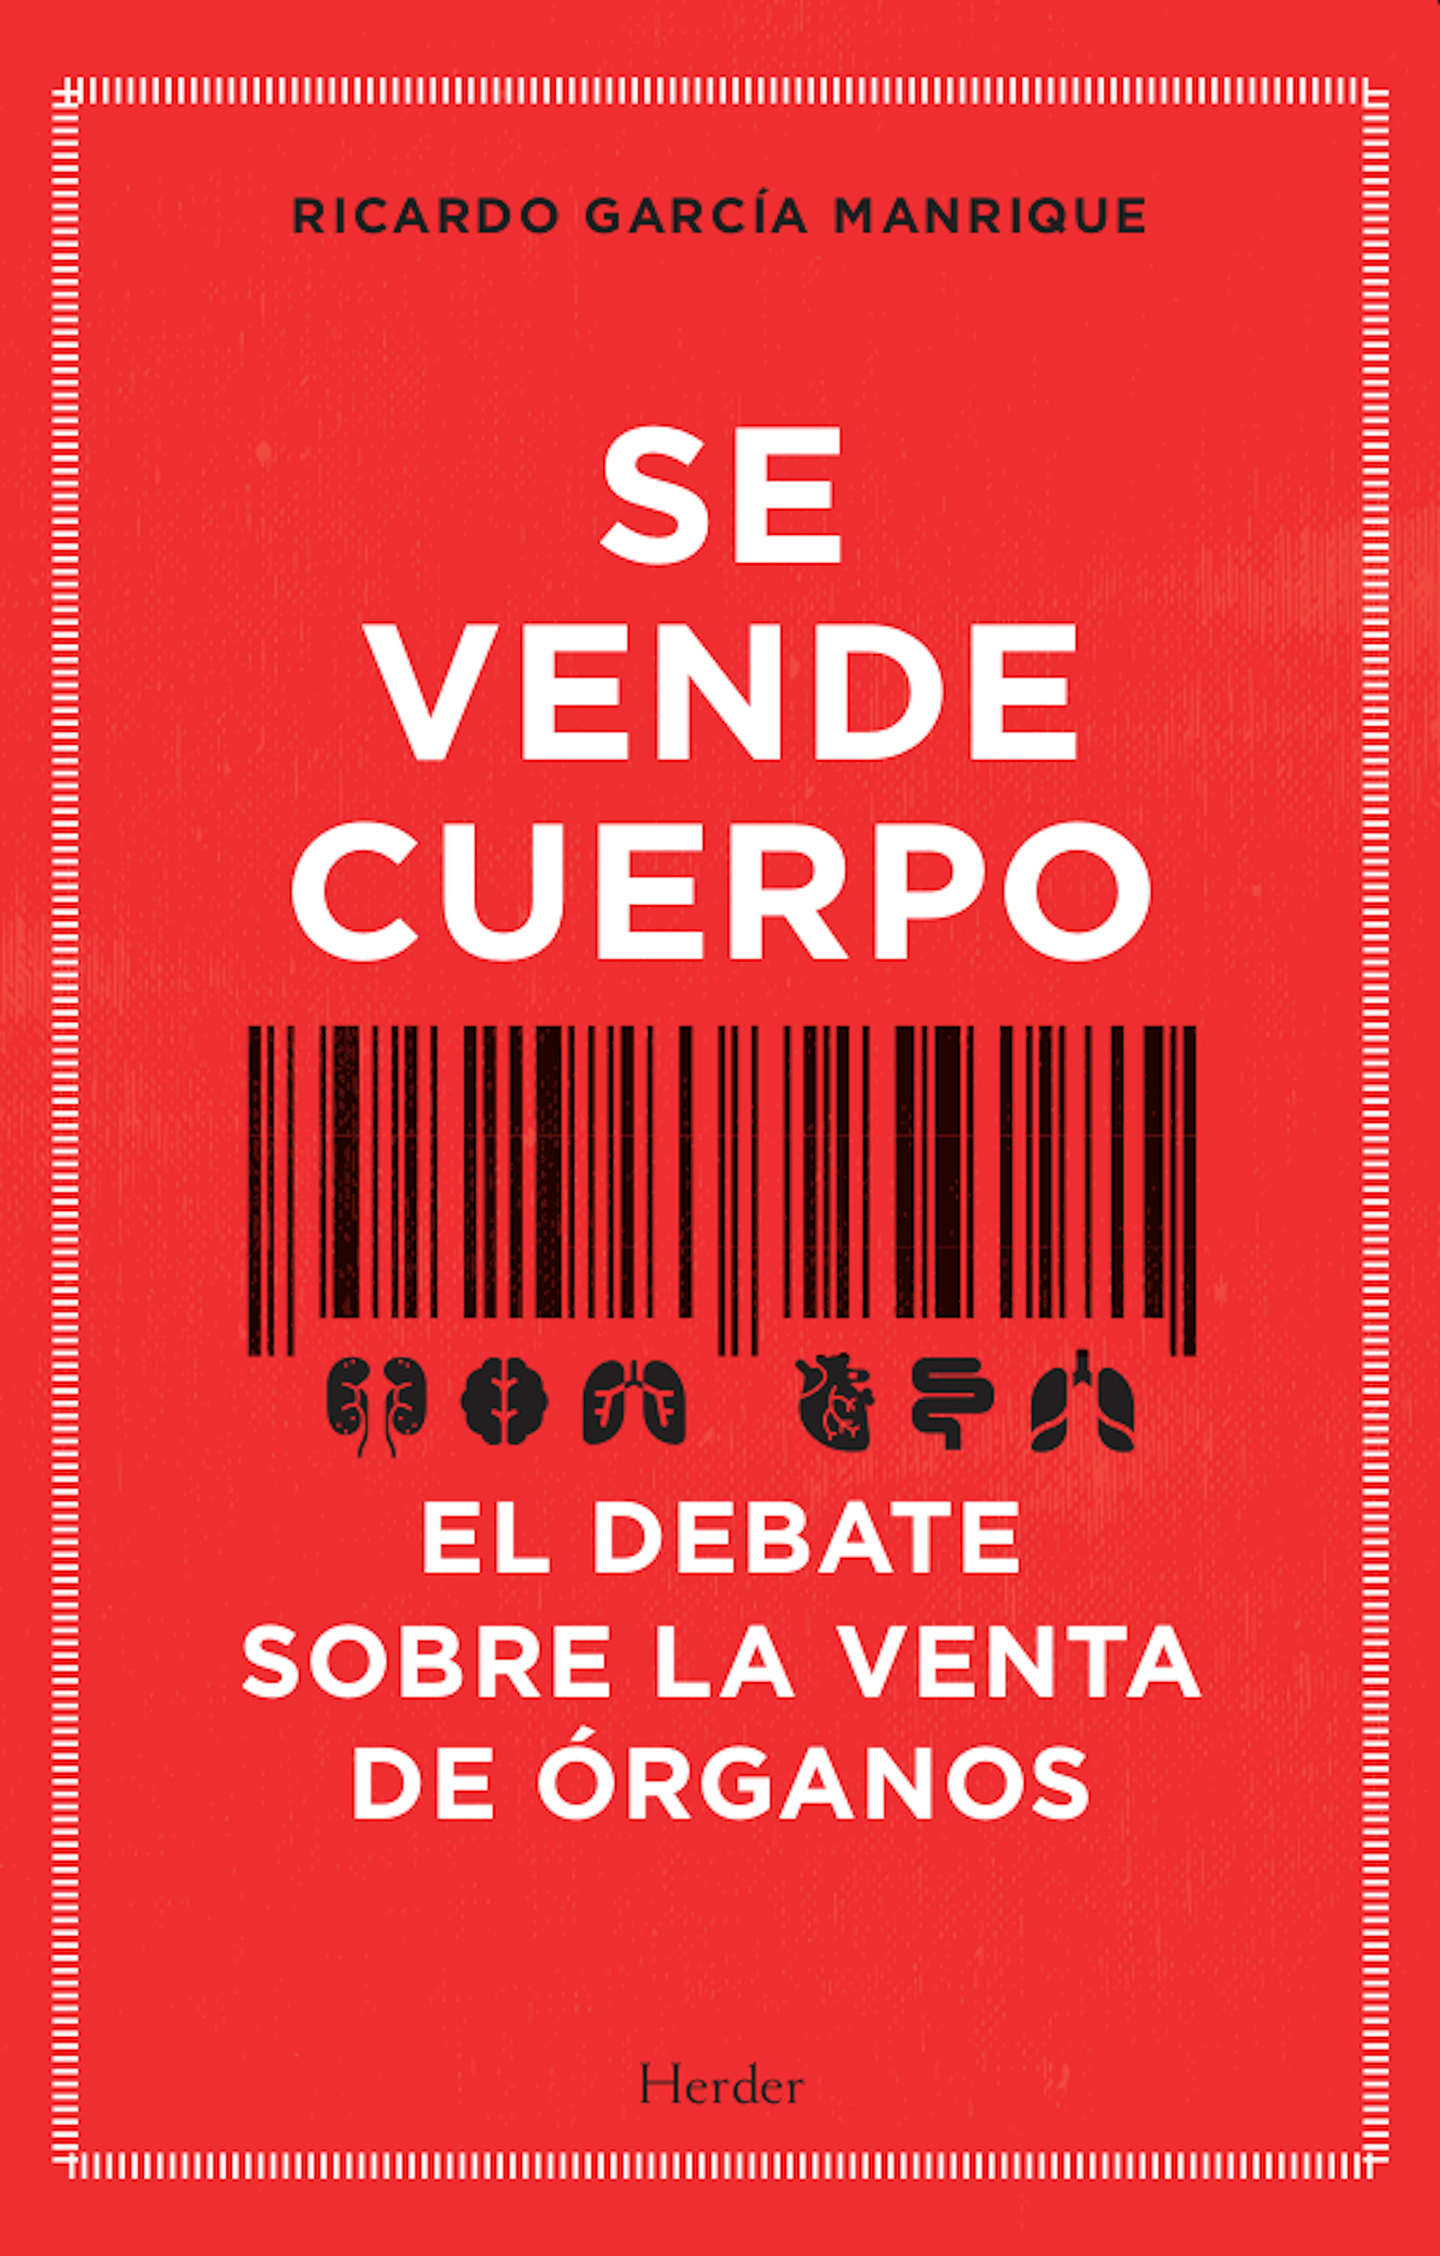 Ricardo García Manrique SE VENDE CUERPO El debate sobre la venta de órganos - photo 1